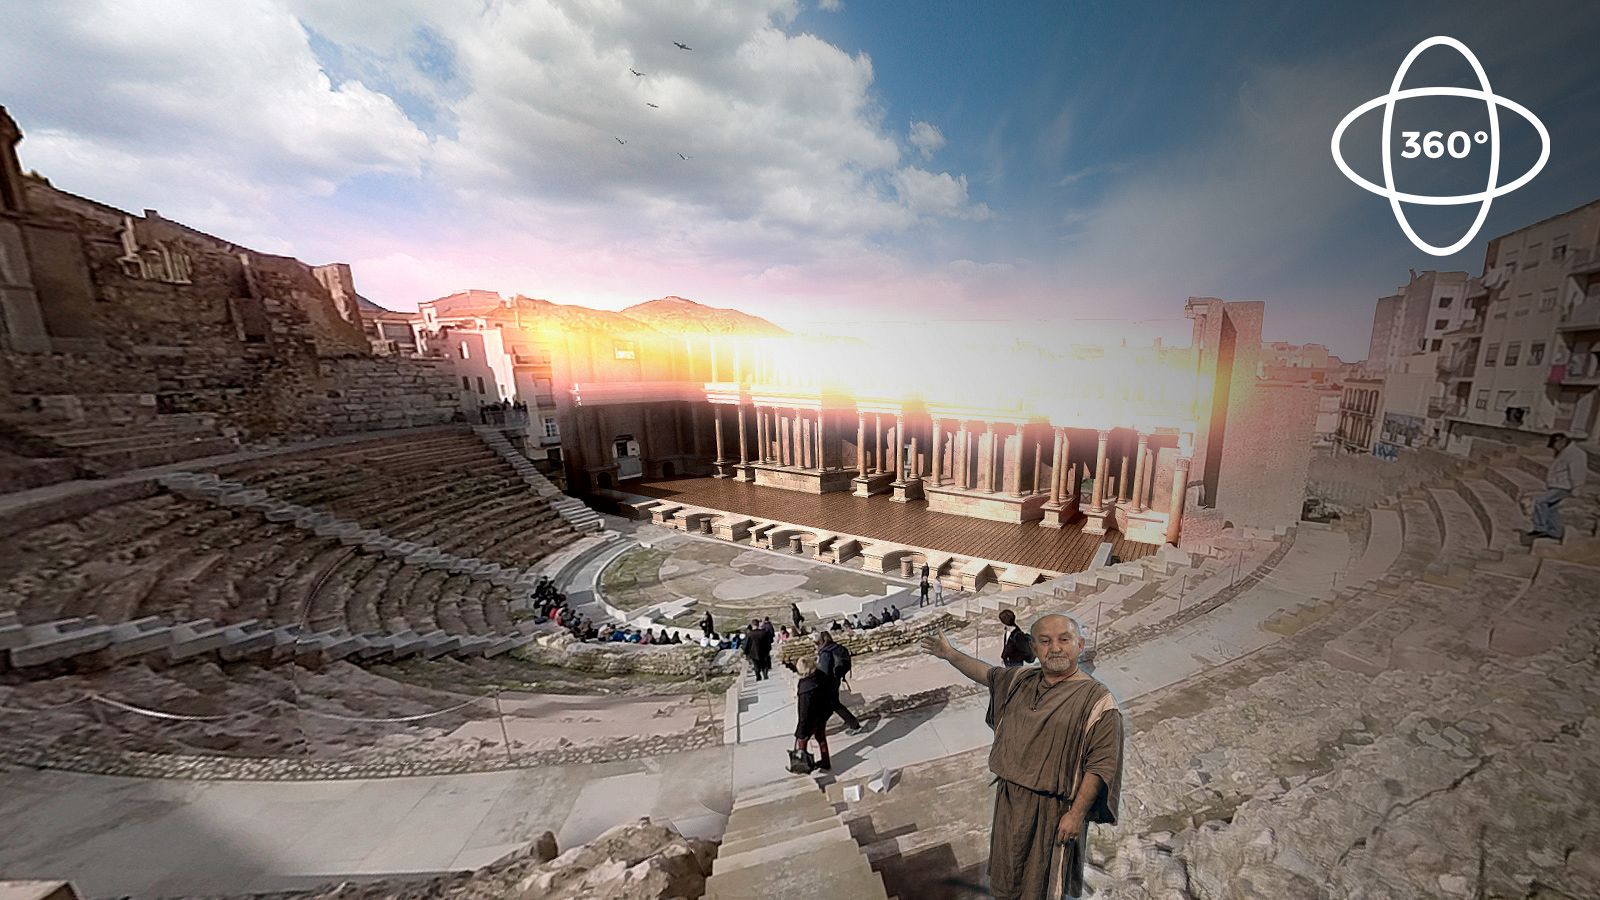 Ingeniería romana 360º: Teatro Romano de Cartagena